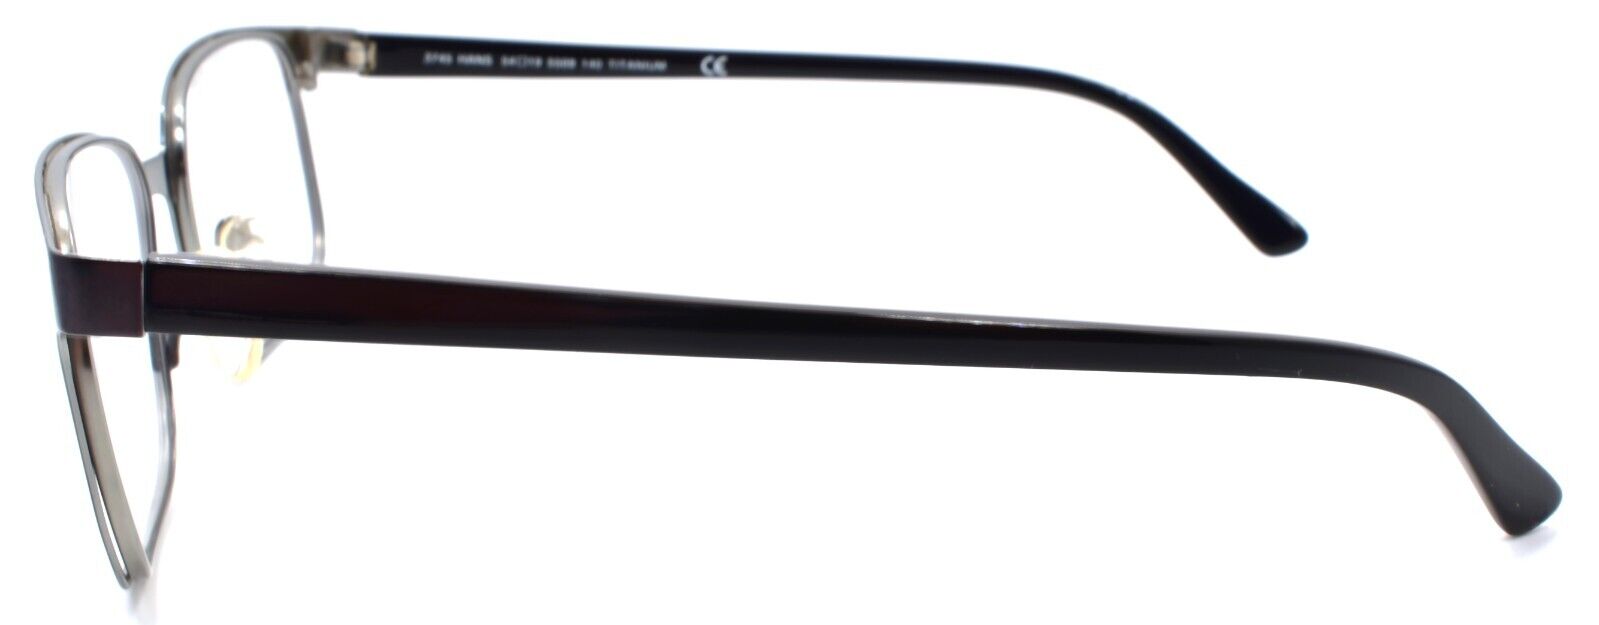 3-Skaga 3745 Hans 5509 Men's Eyeglasses Frames 54-19-140 Gunmetal-Does not apply-IKSpecs